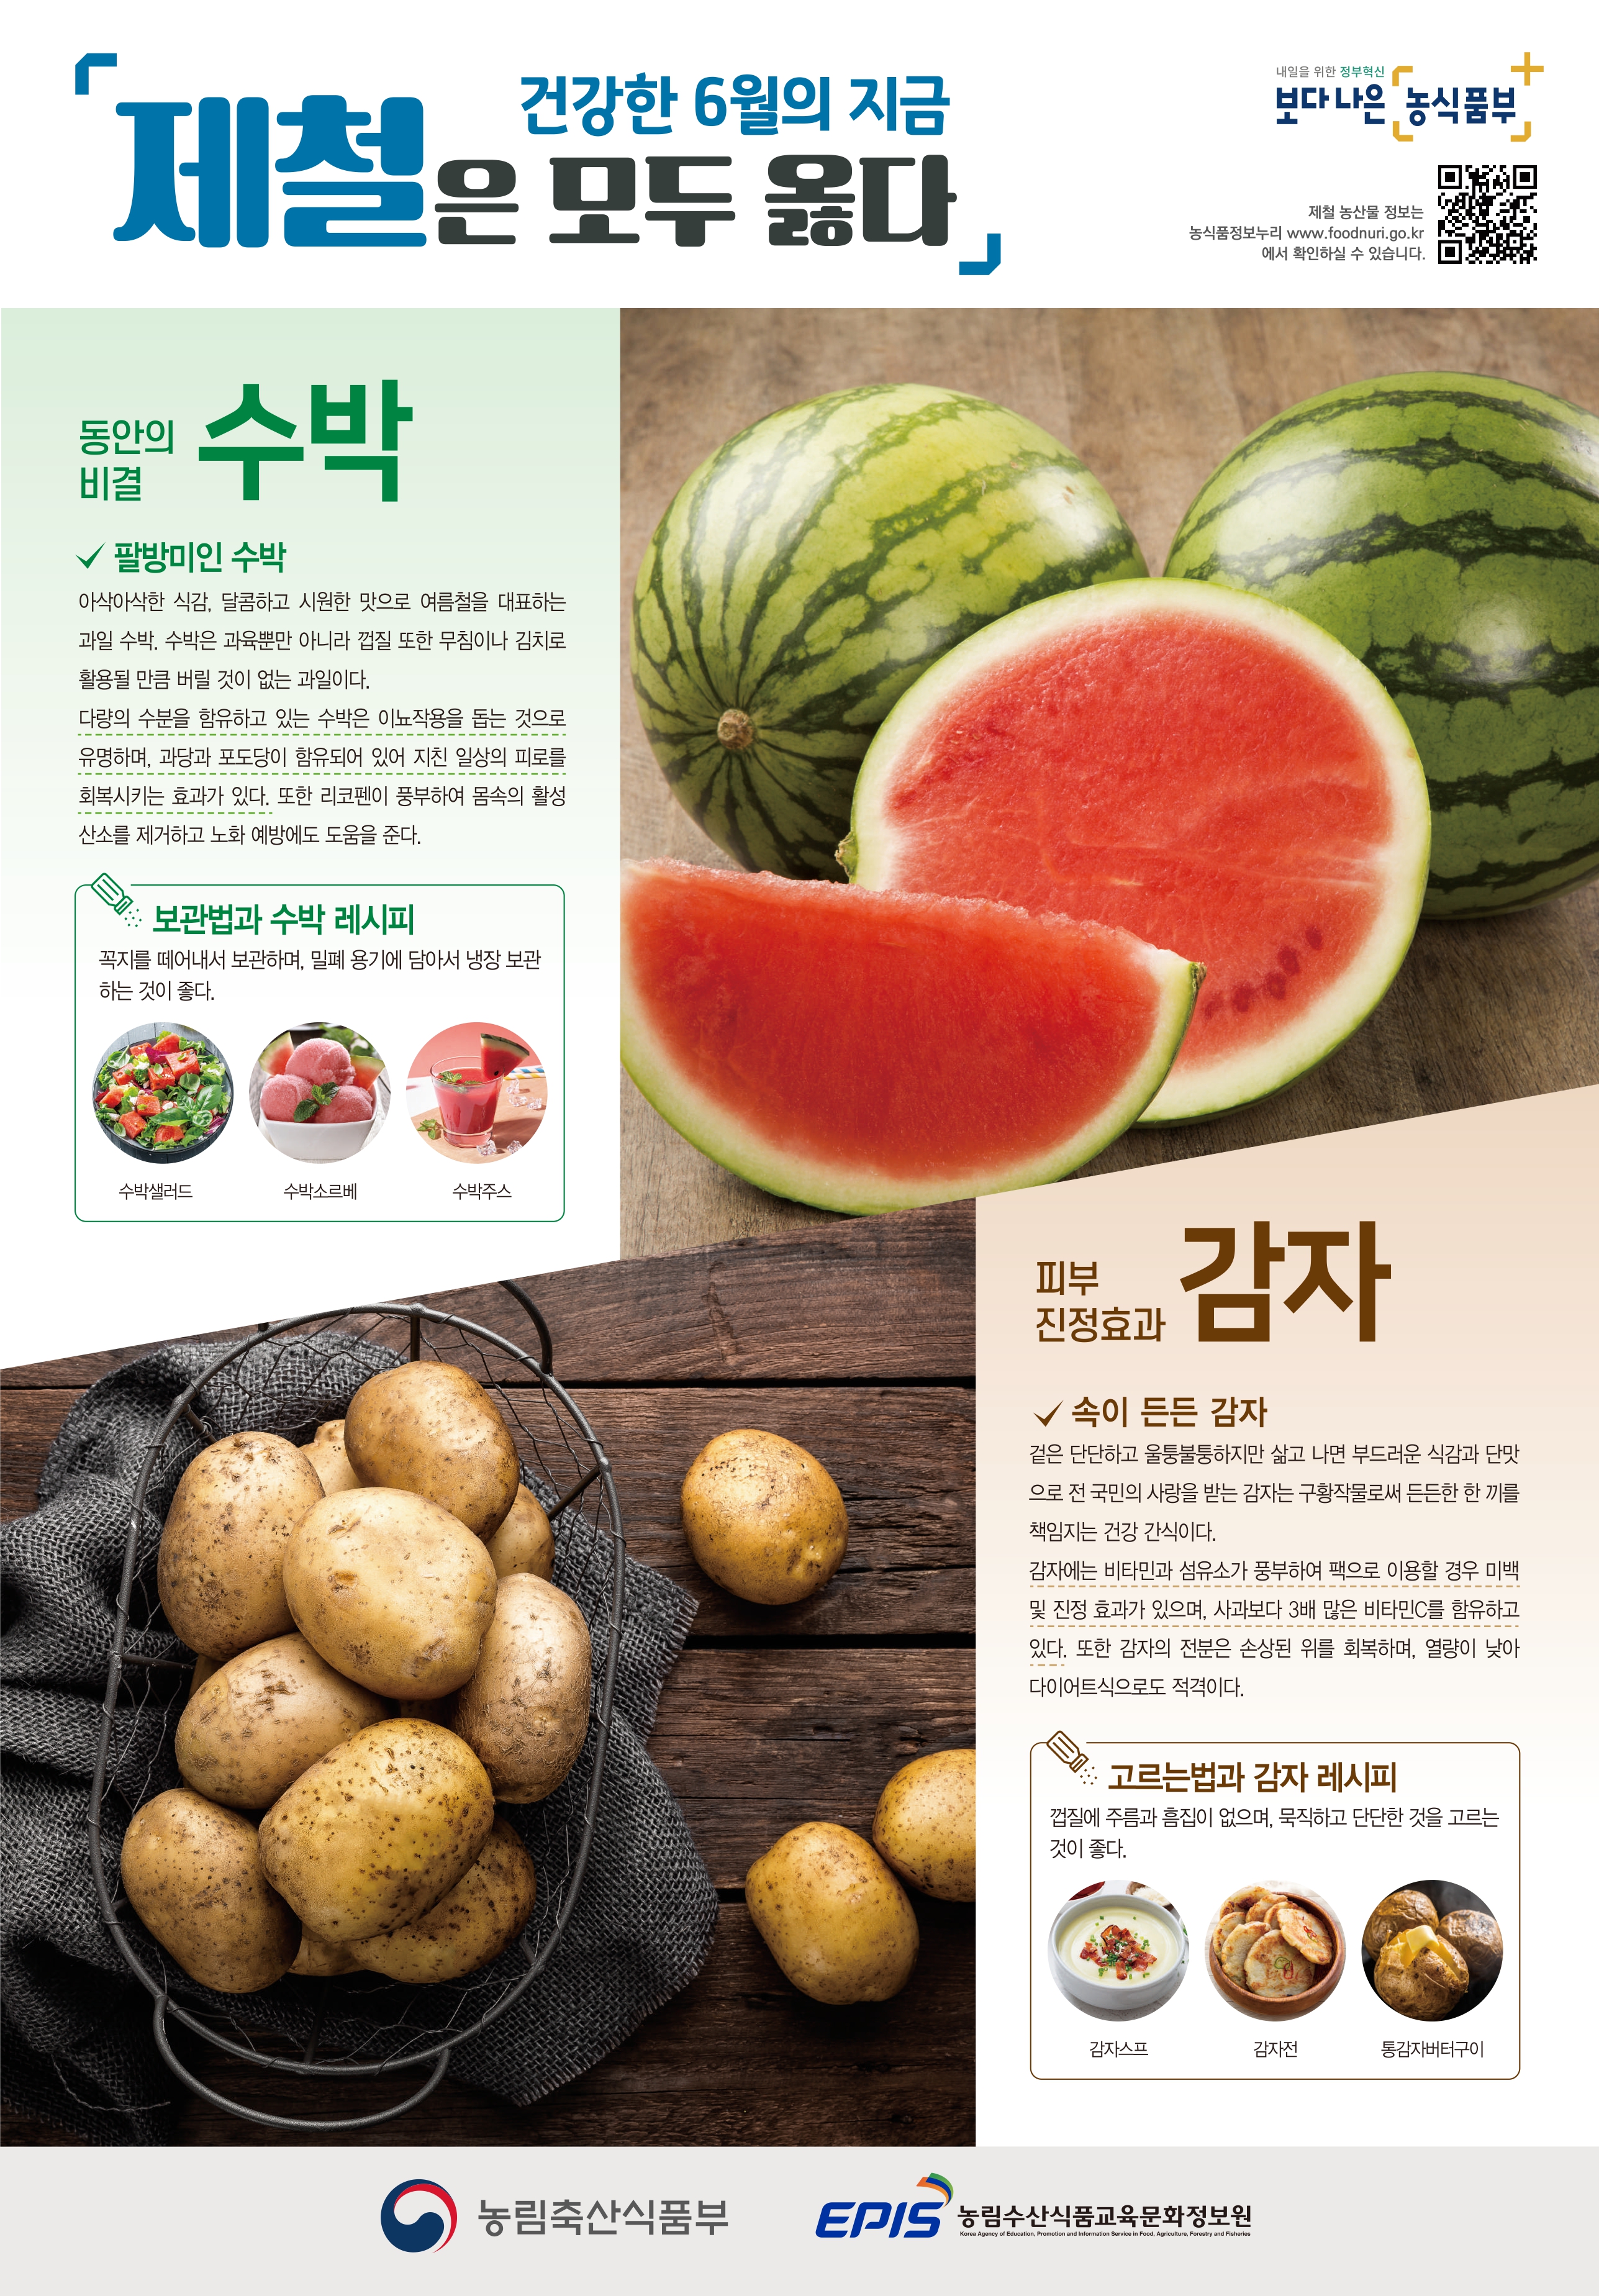 6월의 제철 농산물 수박, 감자 6월의 제철농산물 수박, 감자.jpg